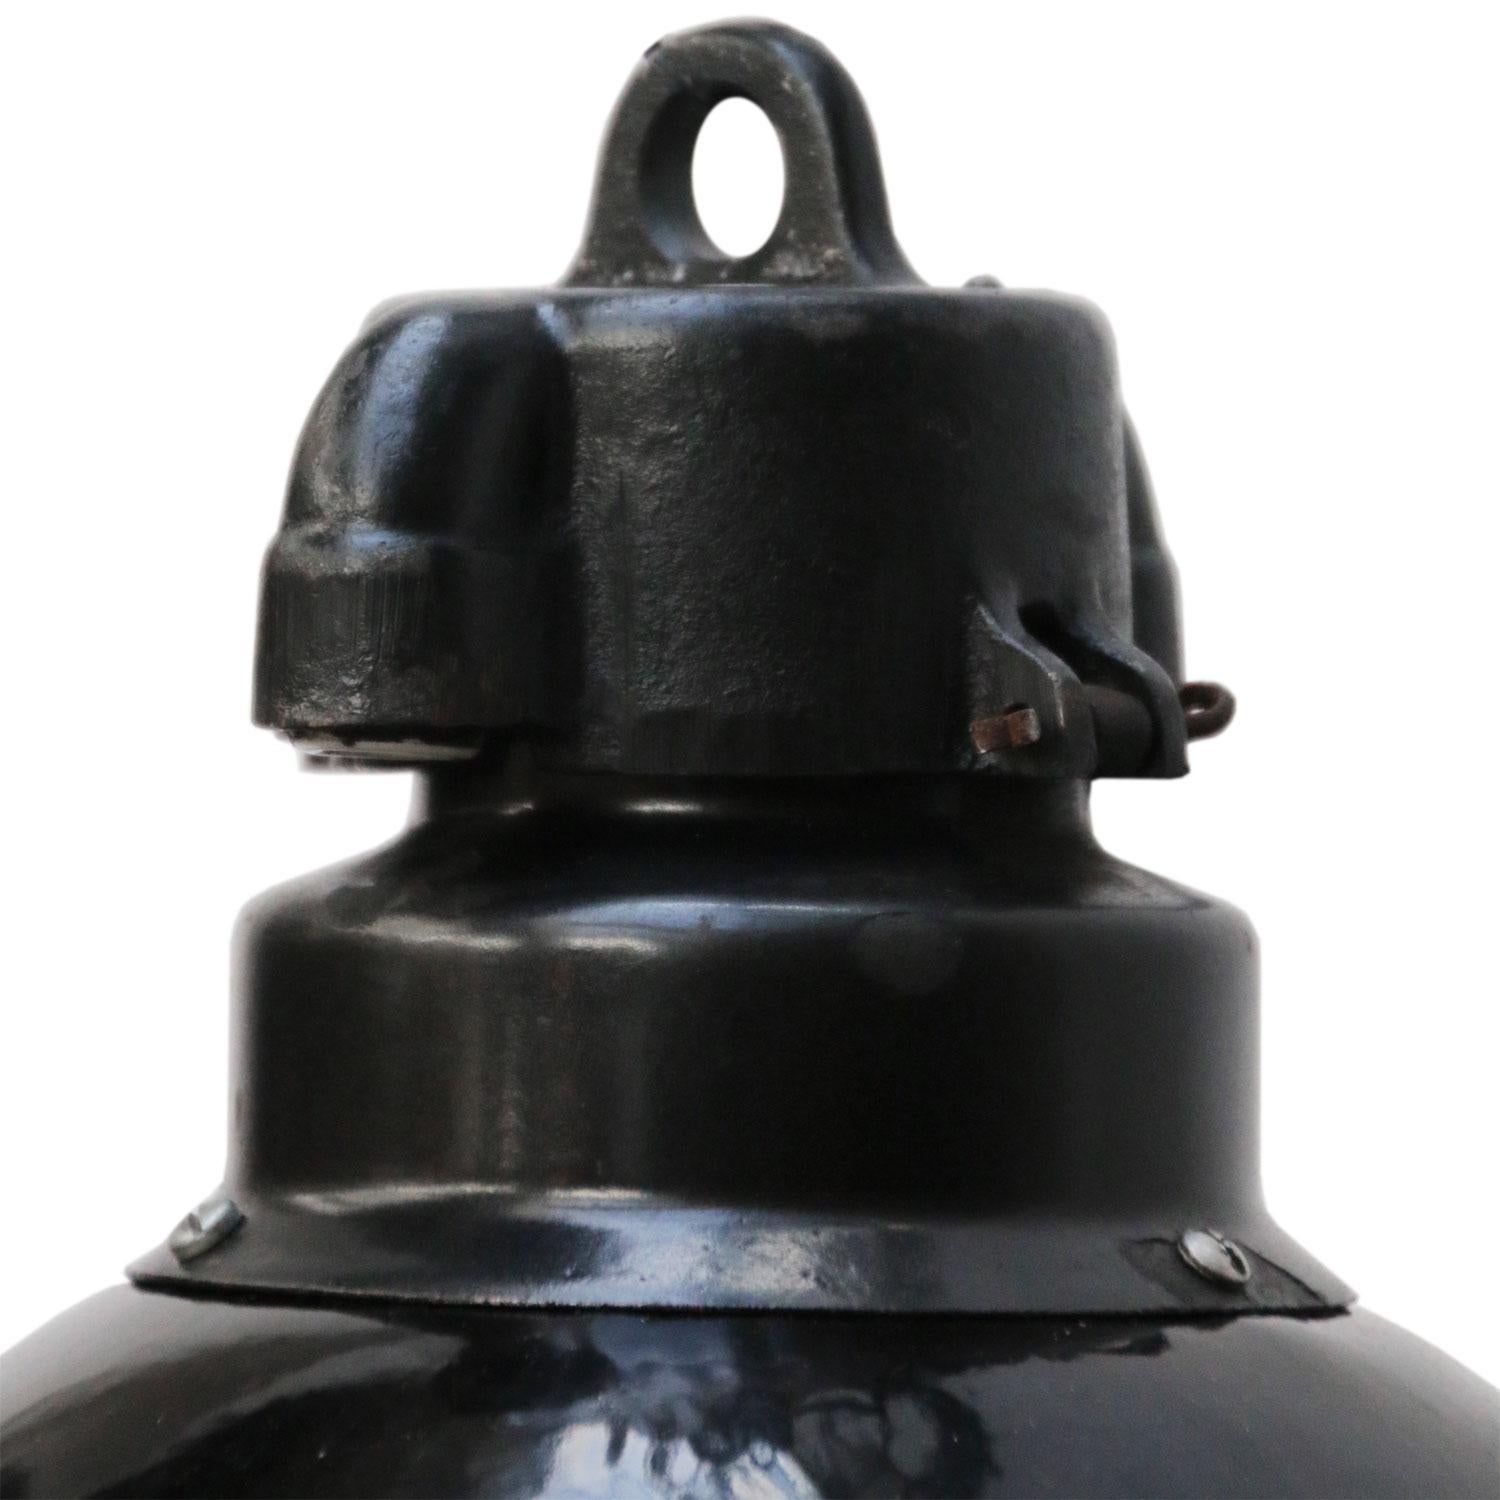 Classique Bauhaus des années 1930. Lampe à suspension industrielle en émail noir.
Dessus en fonte. Intérieur blanc.

Poids : 1,7 kg / 3,7 lb

Le prix est fixé par article individuel. Toutes les lampes ont été rendues conformes aux normes